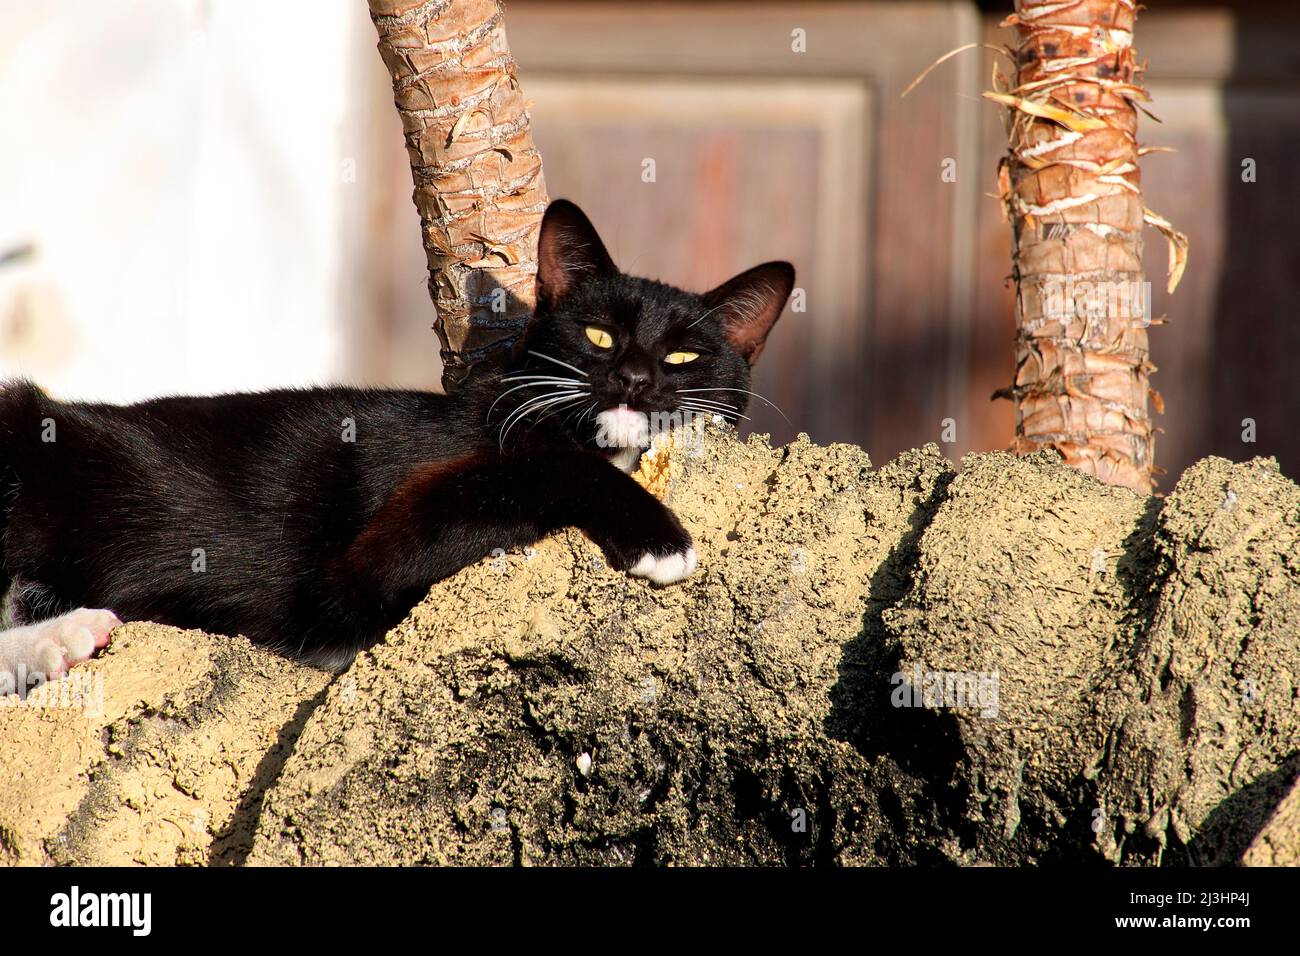 Islas Canarias, Lanzarote, isla volcánica, al norte de la isla, ciudad oasis, haria, gato negro se encuentra en el sol de la mañana Foto de stock